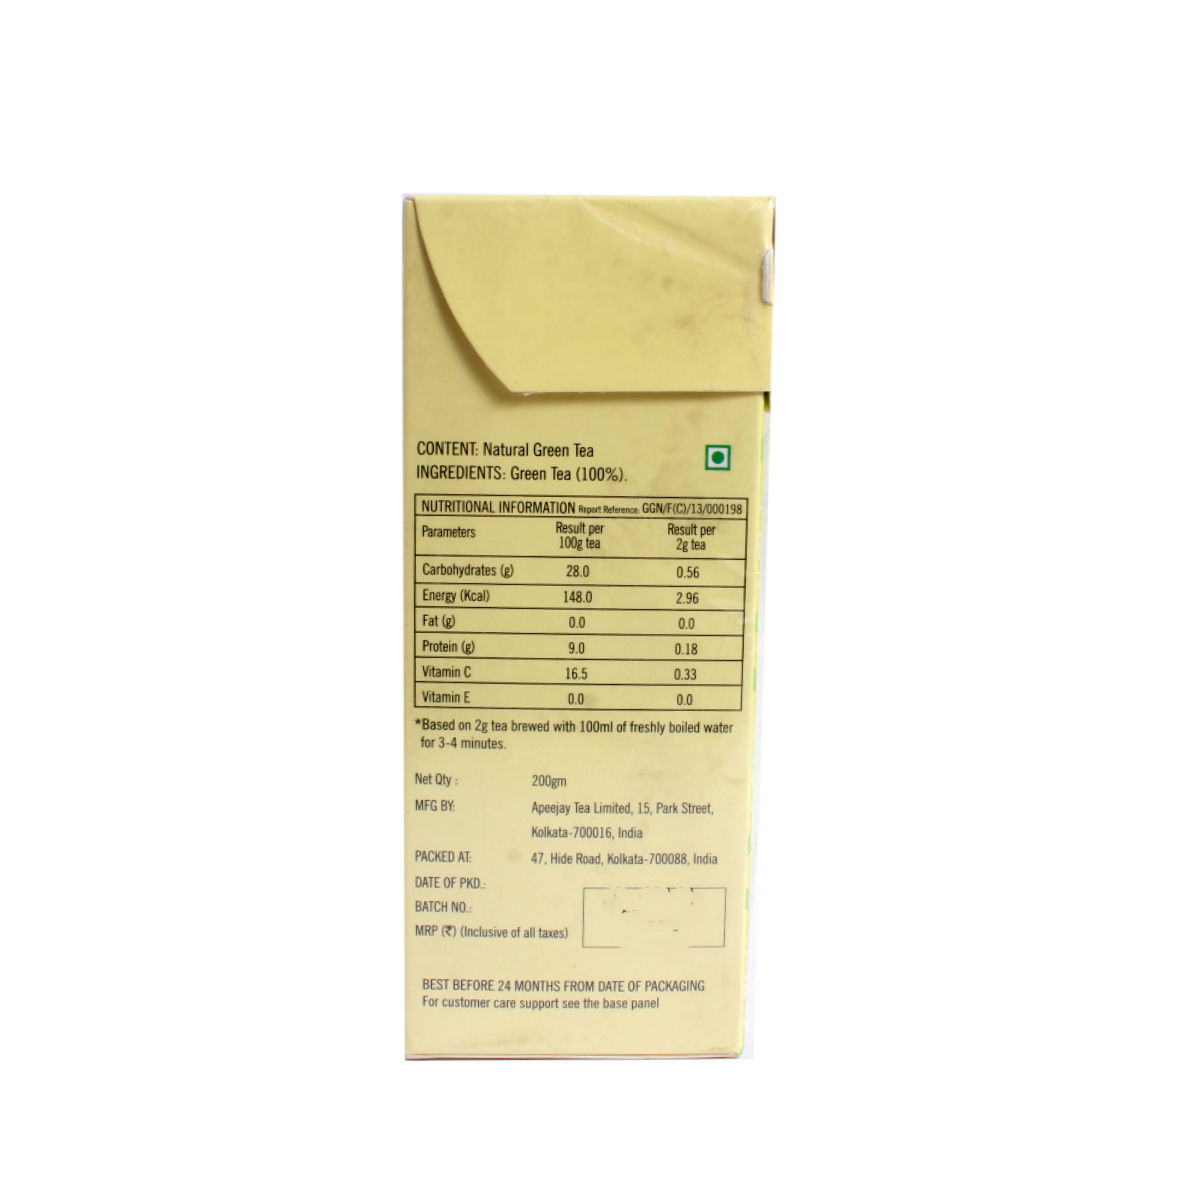 Ty.phoo Pure Green Tea Leaf Powder, 200 gm, Pack of 1 